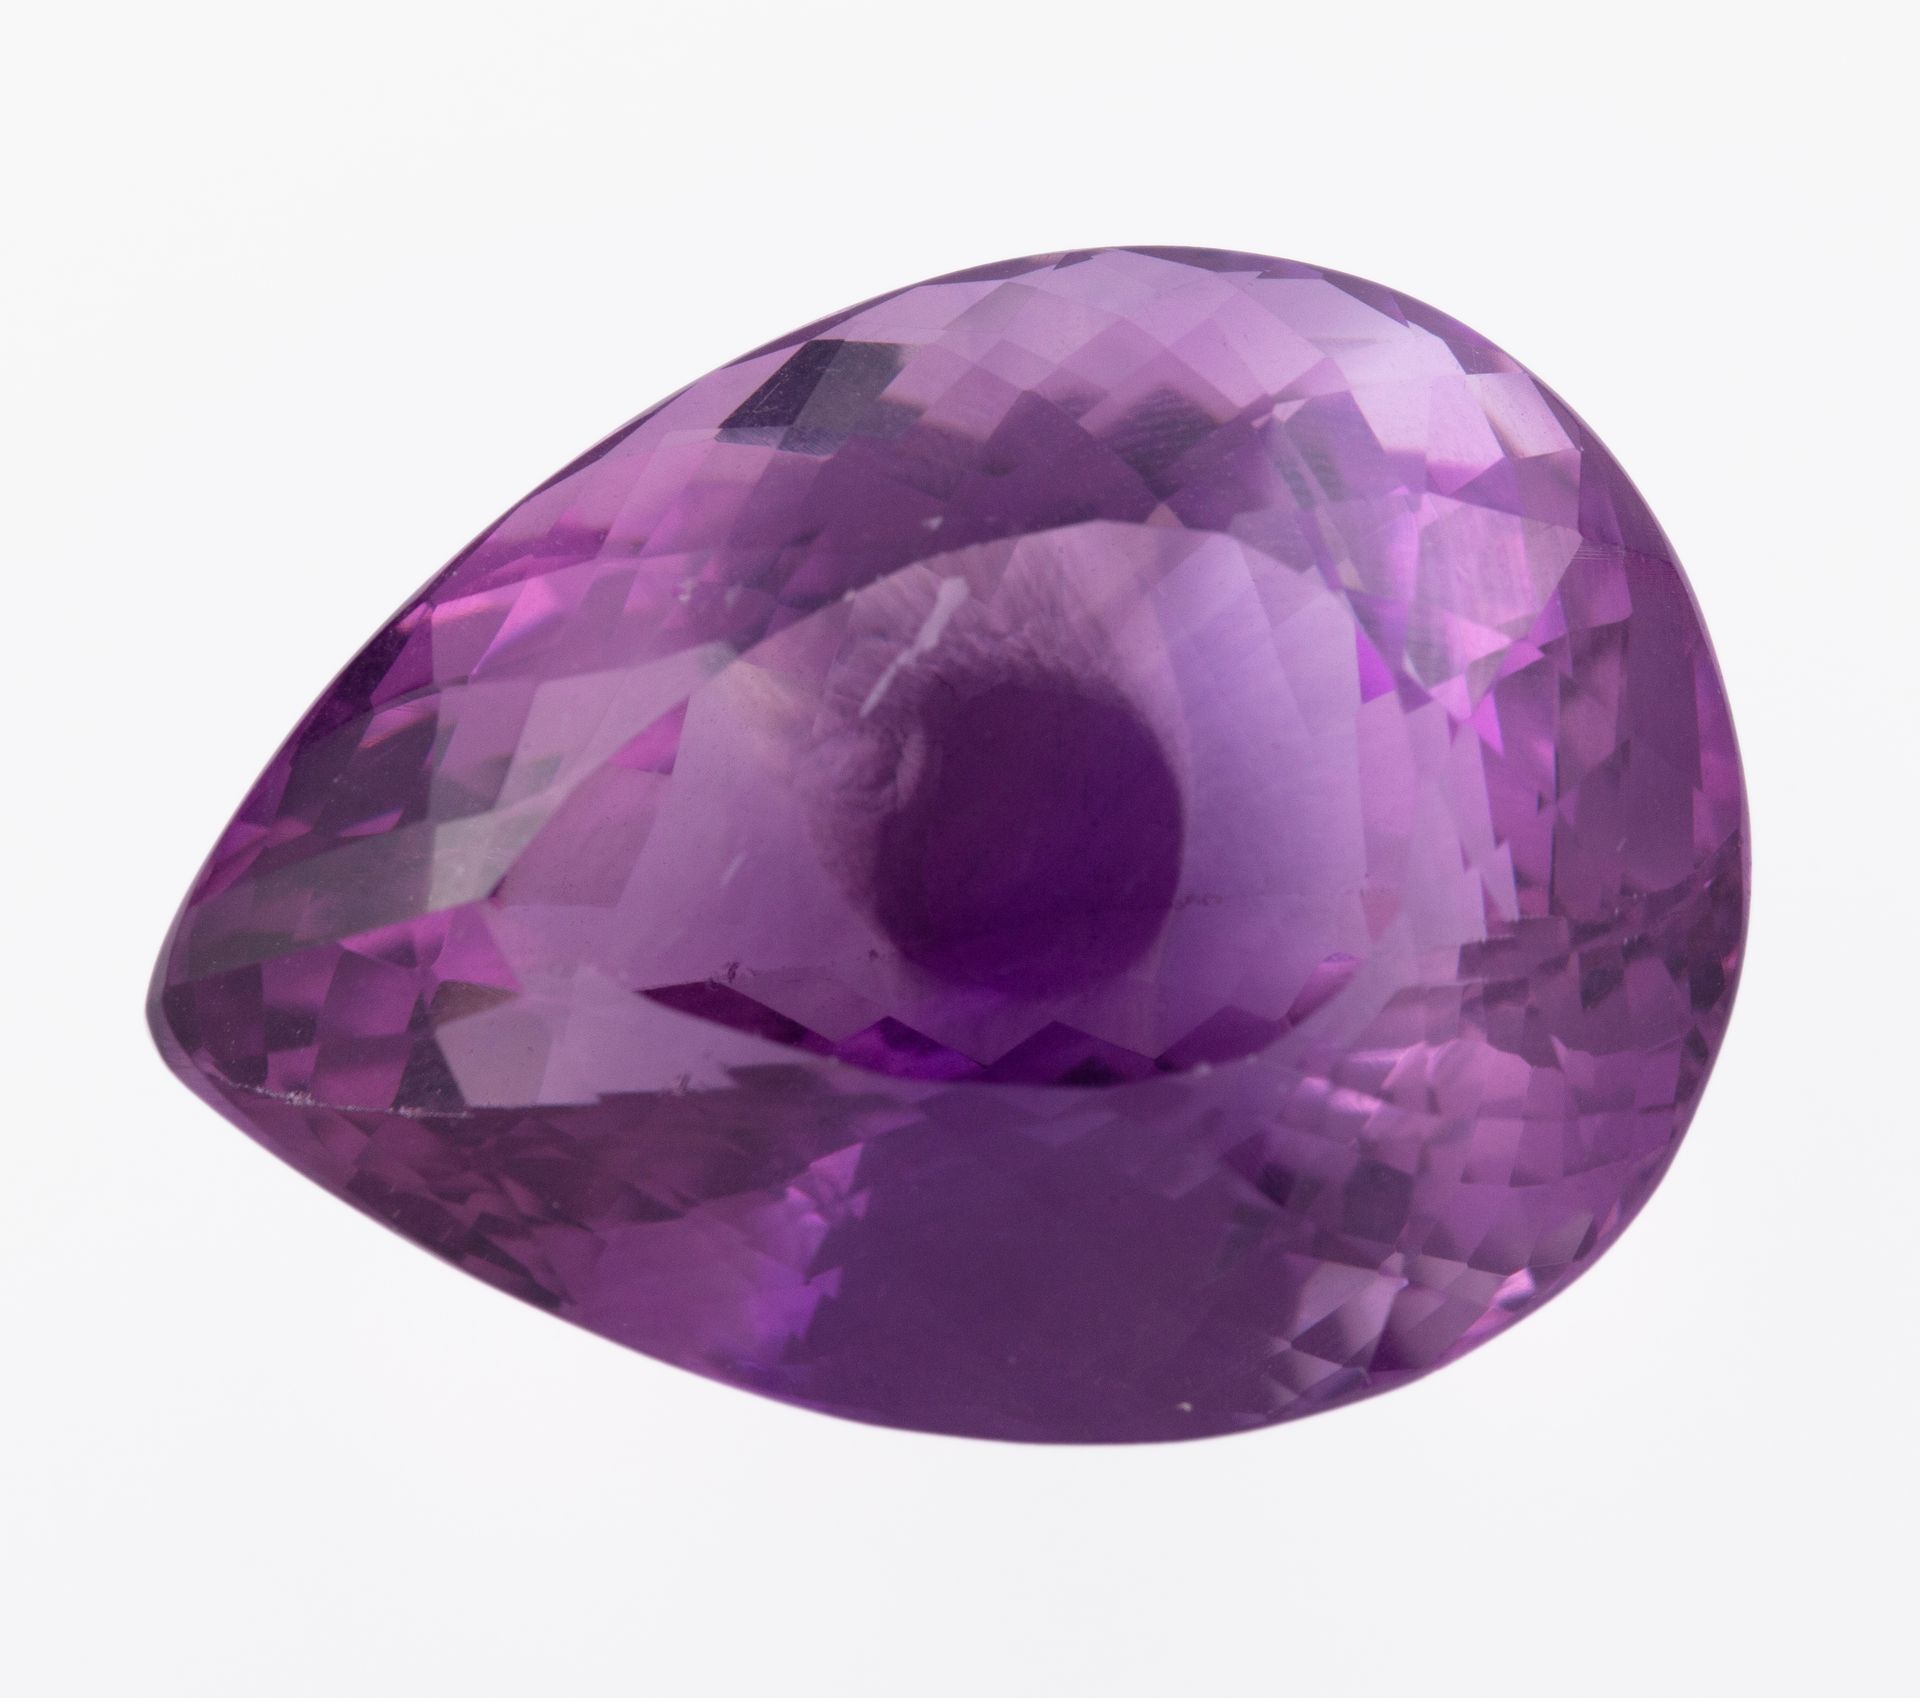 Null 未镶嵌的天然紫水晶65克拉。大约。未镶嵌，梨形切割。表面有轻微的损伤。重量：13.7克。